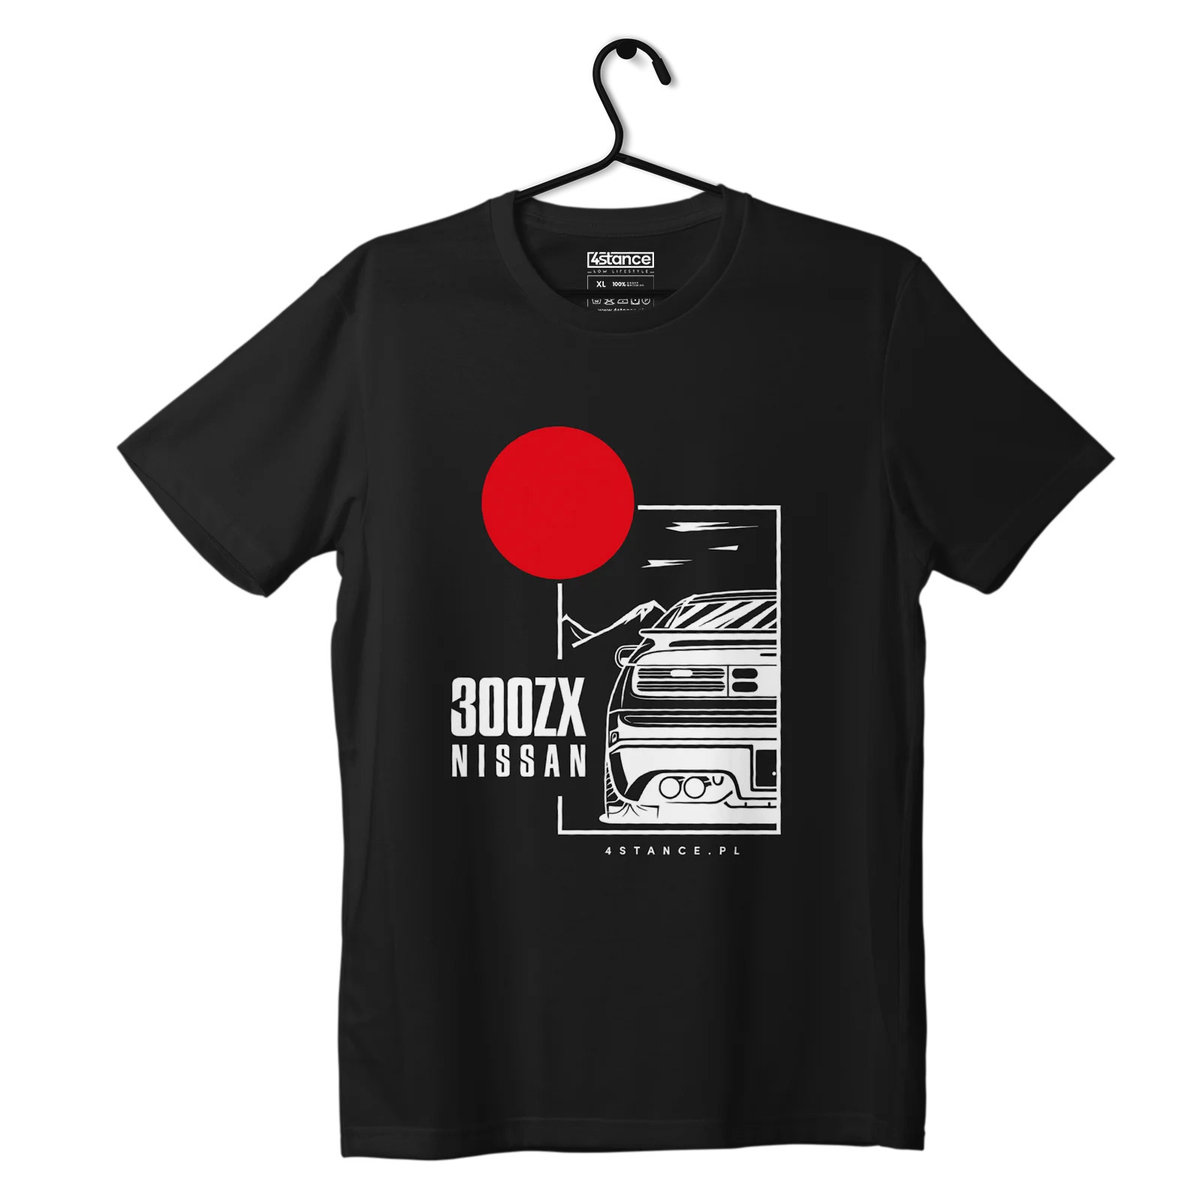 Zdjęcia - Odzież motocyklowa Nissan T-shirt koszulka  300ZX czarna-4XL 